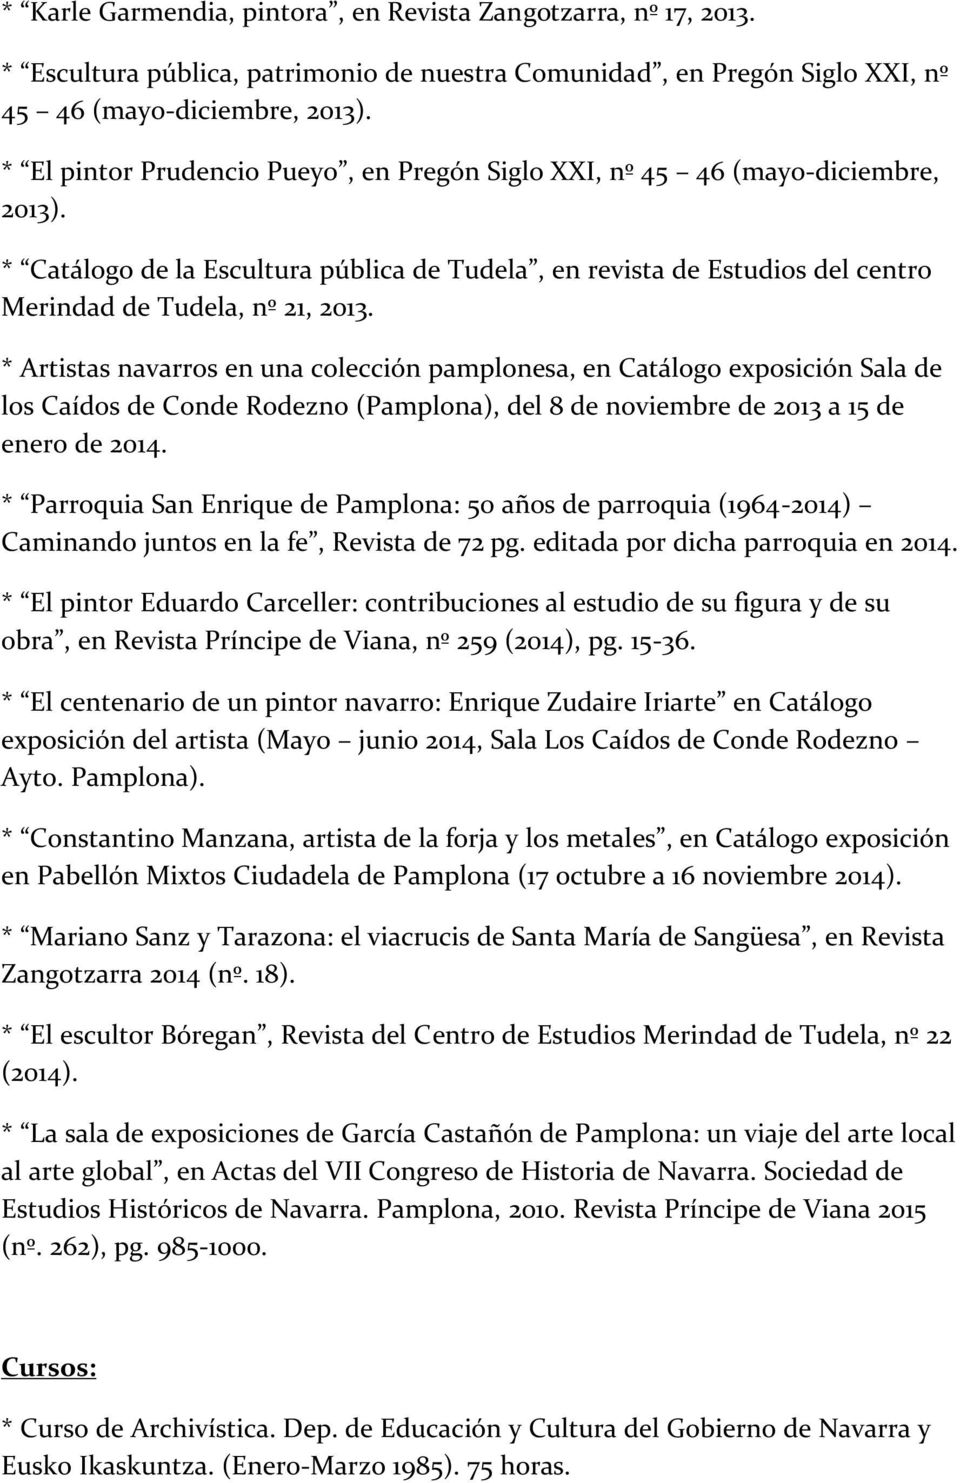 * Artistas navarros en una colección pamplonesa, en Catálogo exposición Sala de los Caídos de Conde Rodezno (Pamplona), del 8 de noviembre de 2013 a 15 de enero de 2014.